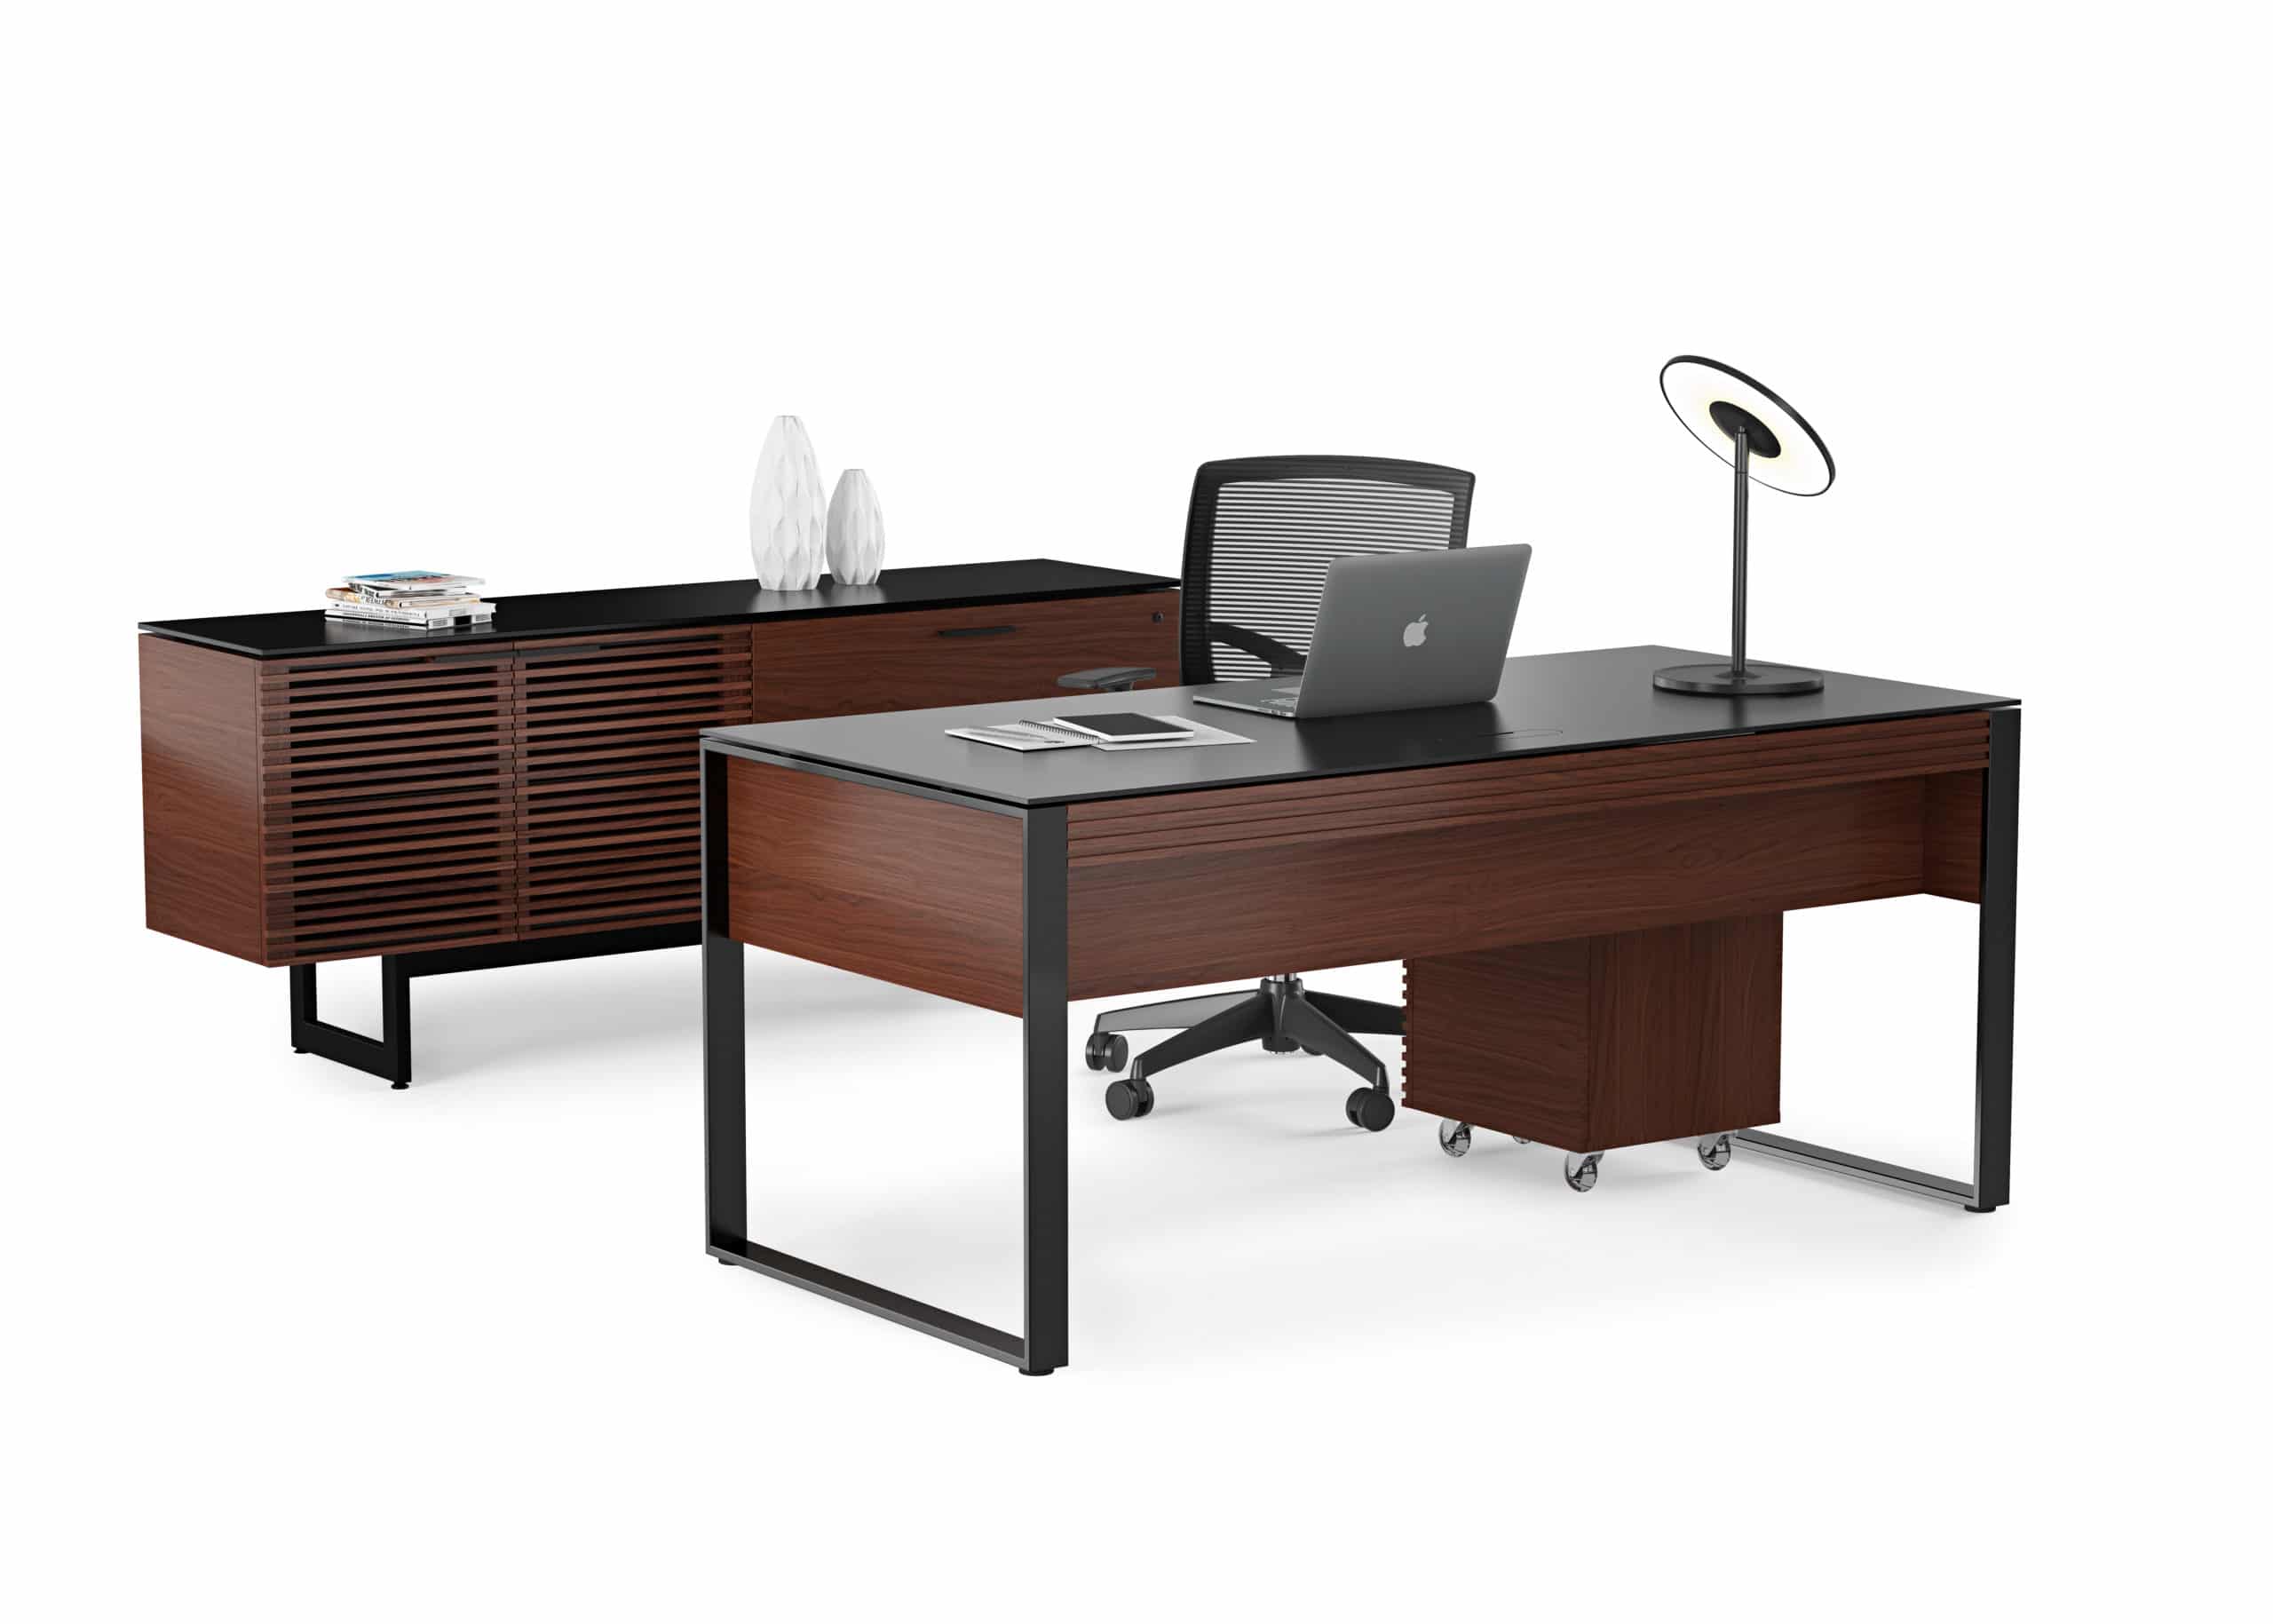 Corridor 6521 Modern Executive Office Desk